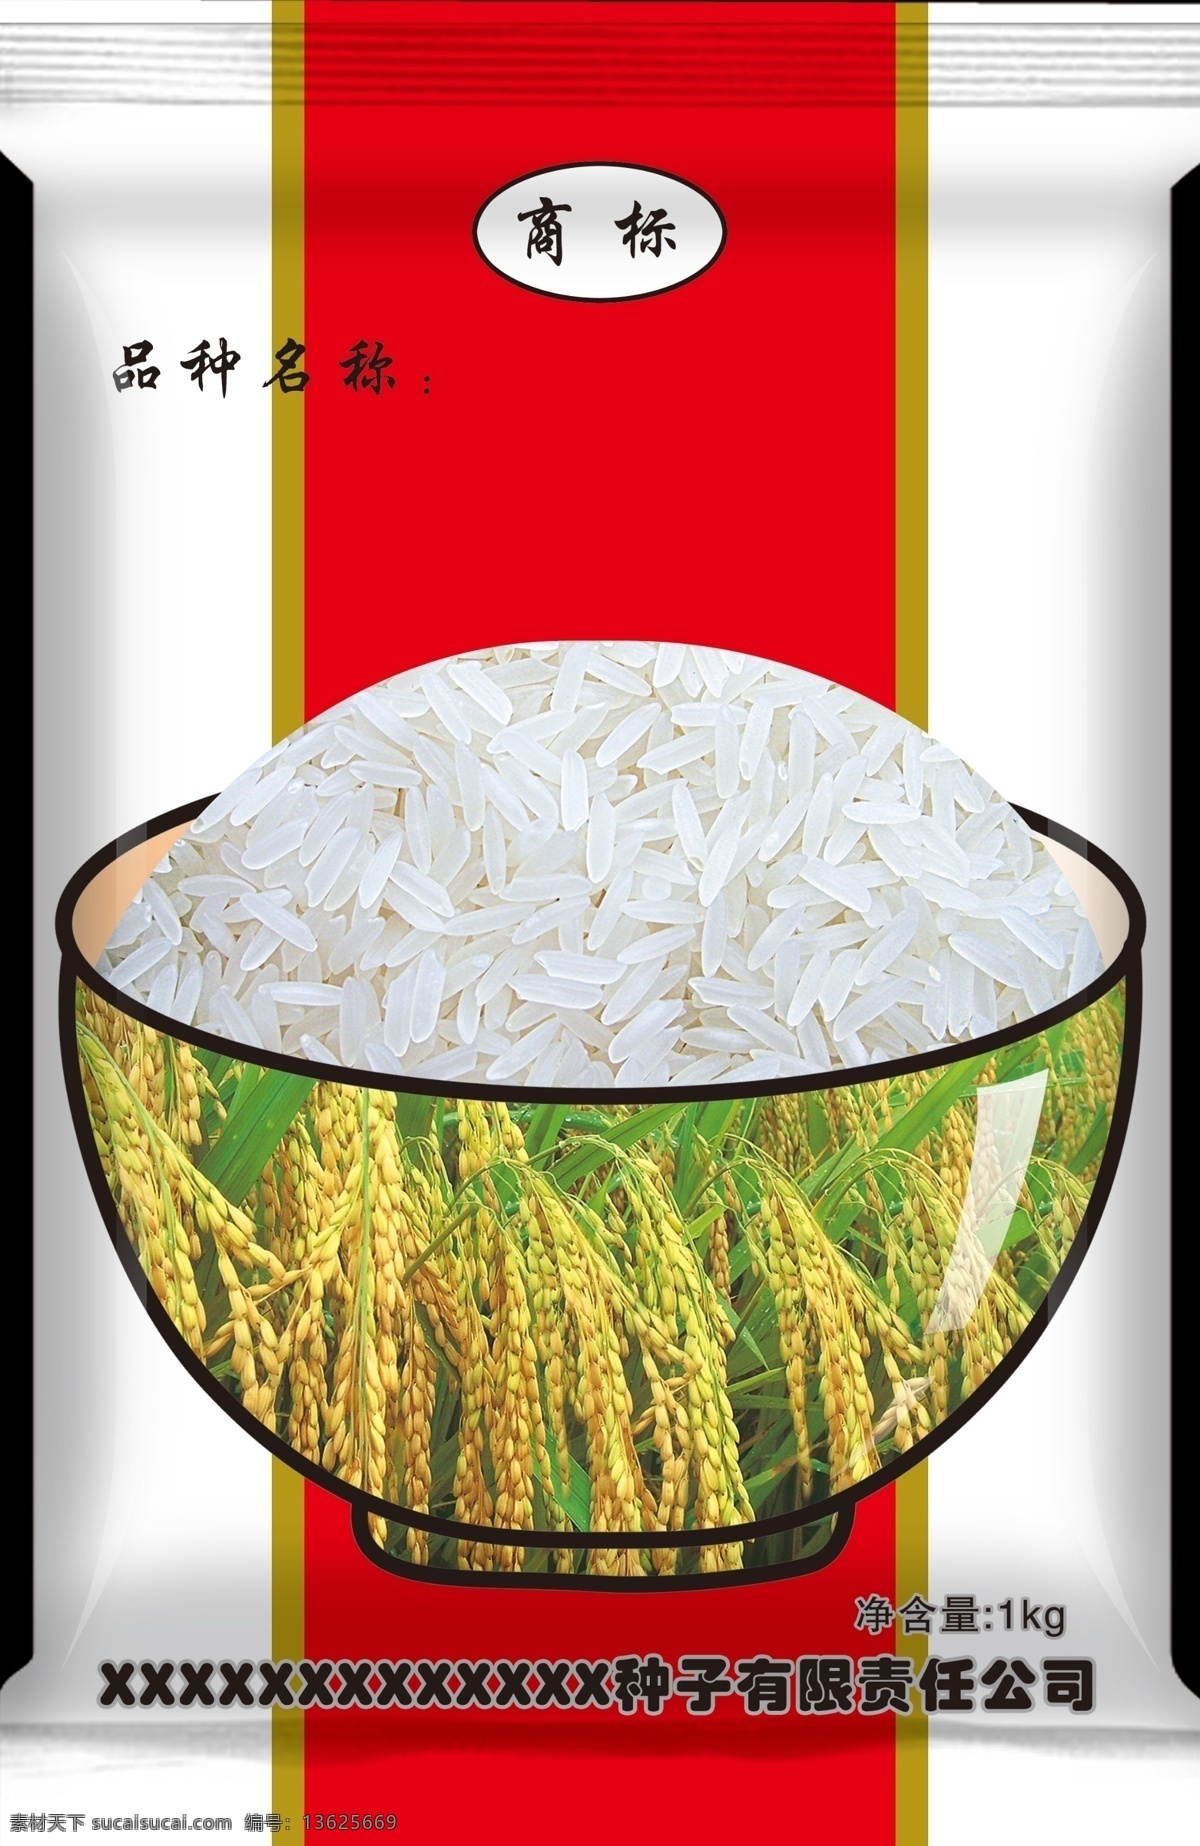 分层 包装 大米 袋子 面粉 水稻 小麦 模板下载 水稻包装 玉米 效果 源文件 psd源文件 包装设计